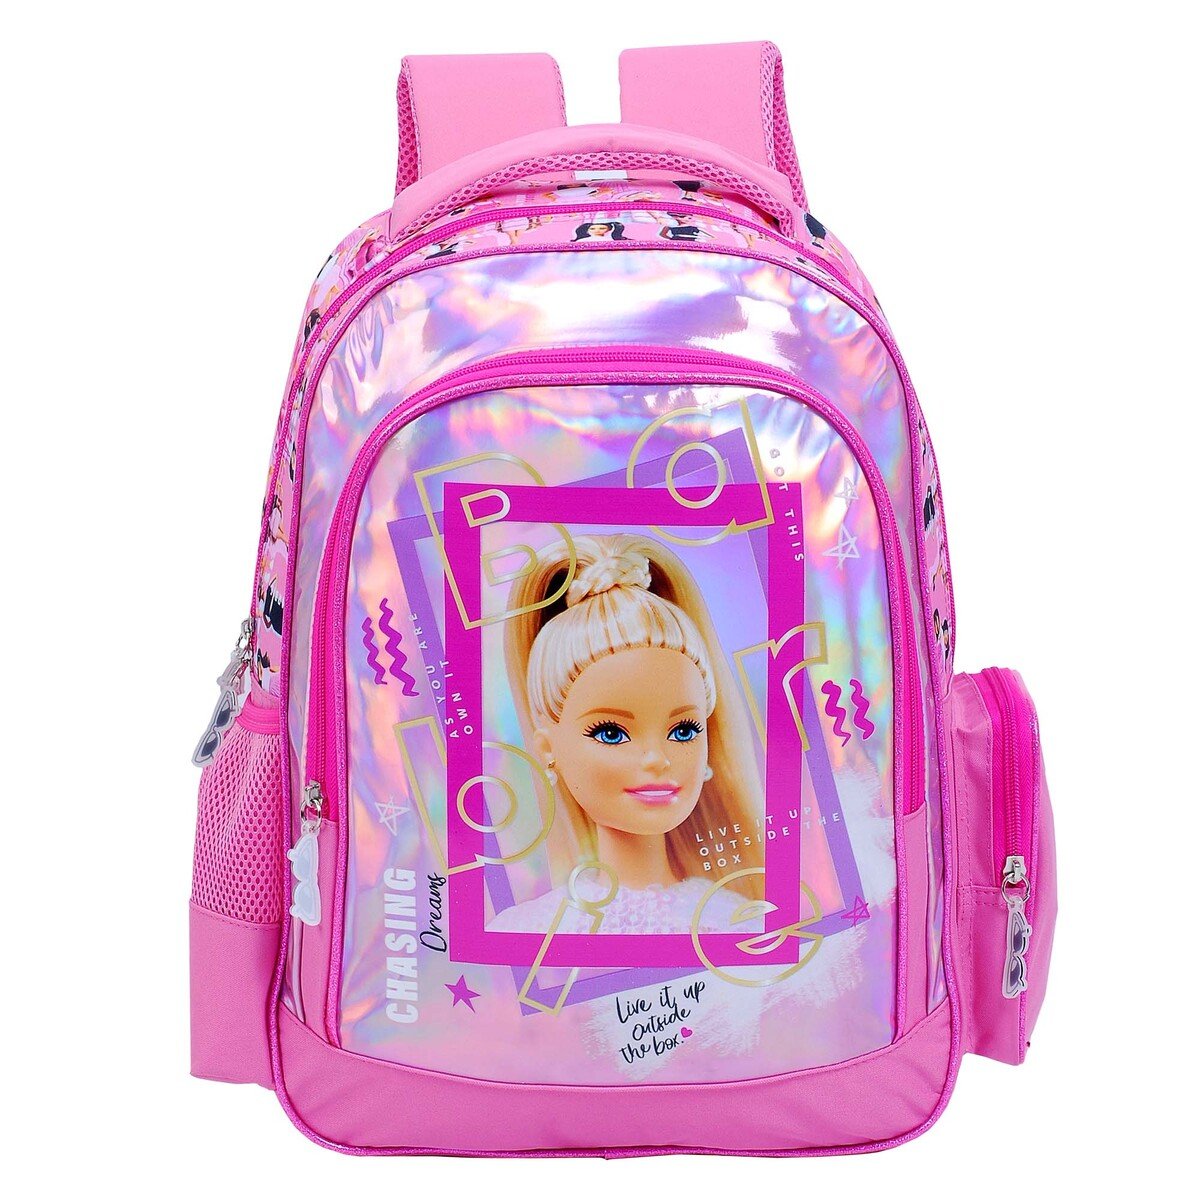 Barbie Backpack 16 inch FK023102